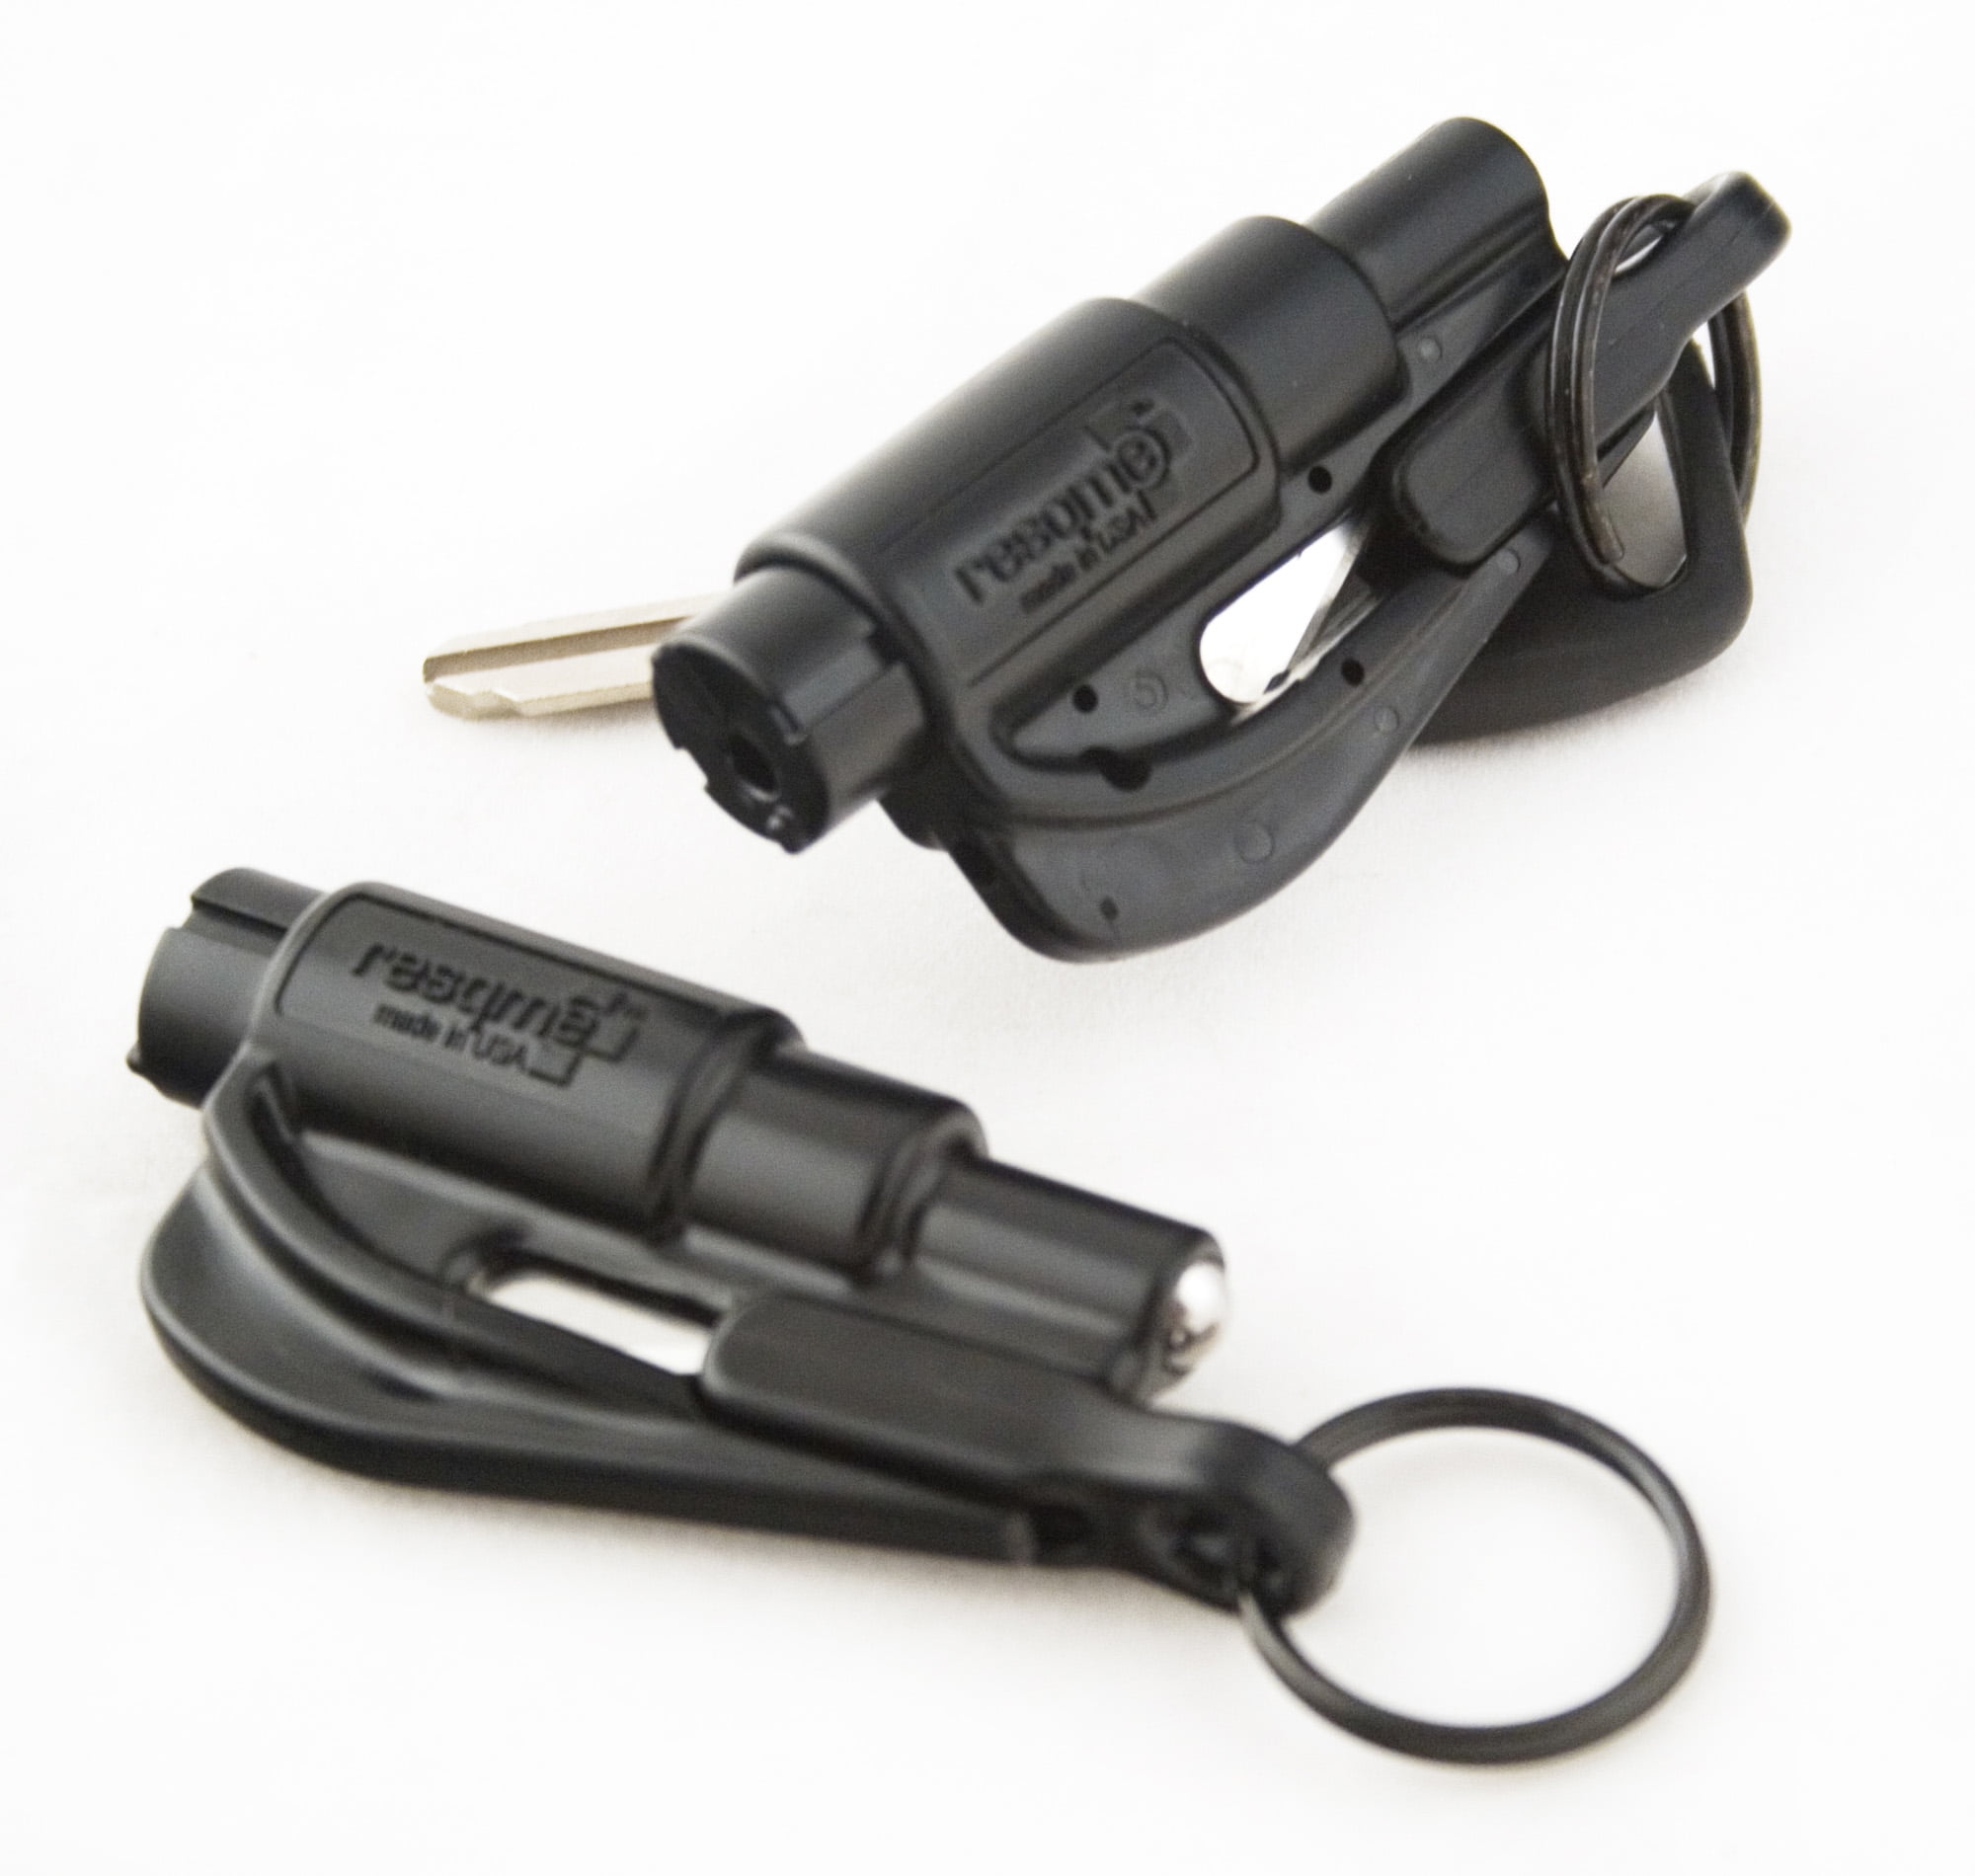 resqme Original Emergency Keychain Car Escape Tool, 2-in-1